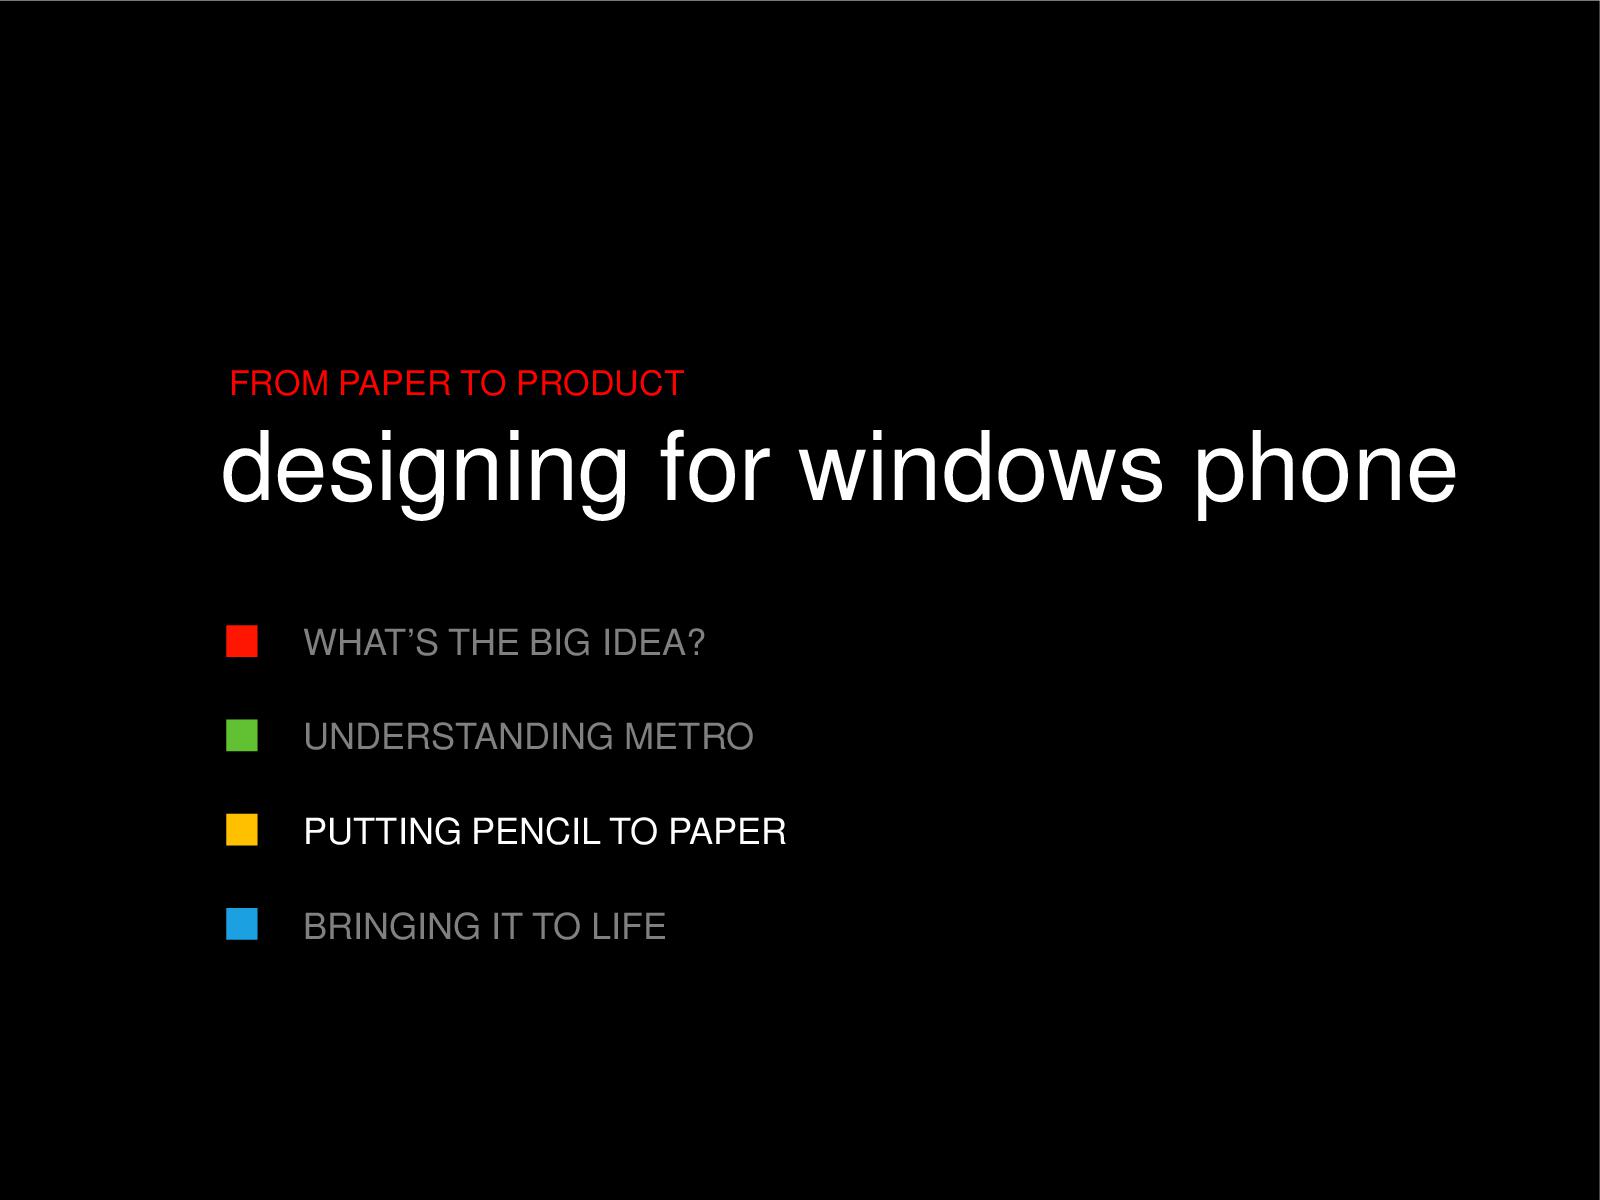 Файл:От наброска до продукта - проектирование Windows Phone (UXRussia-2011, Megan Donahue).pdf